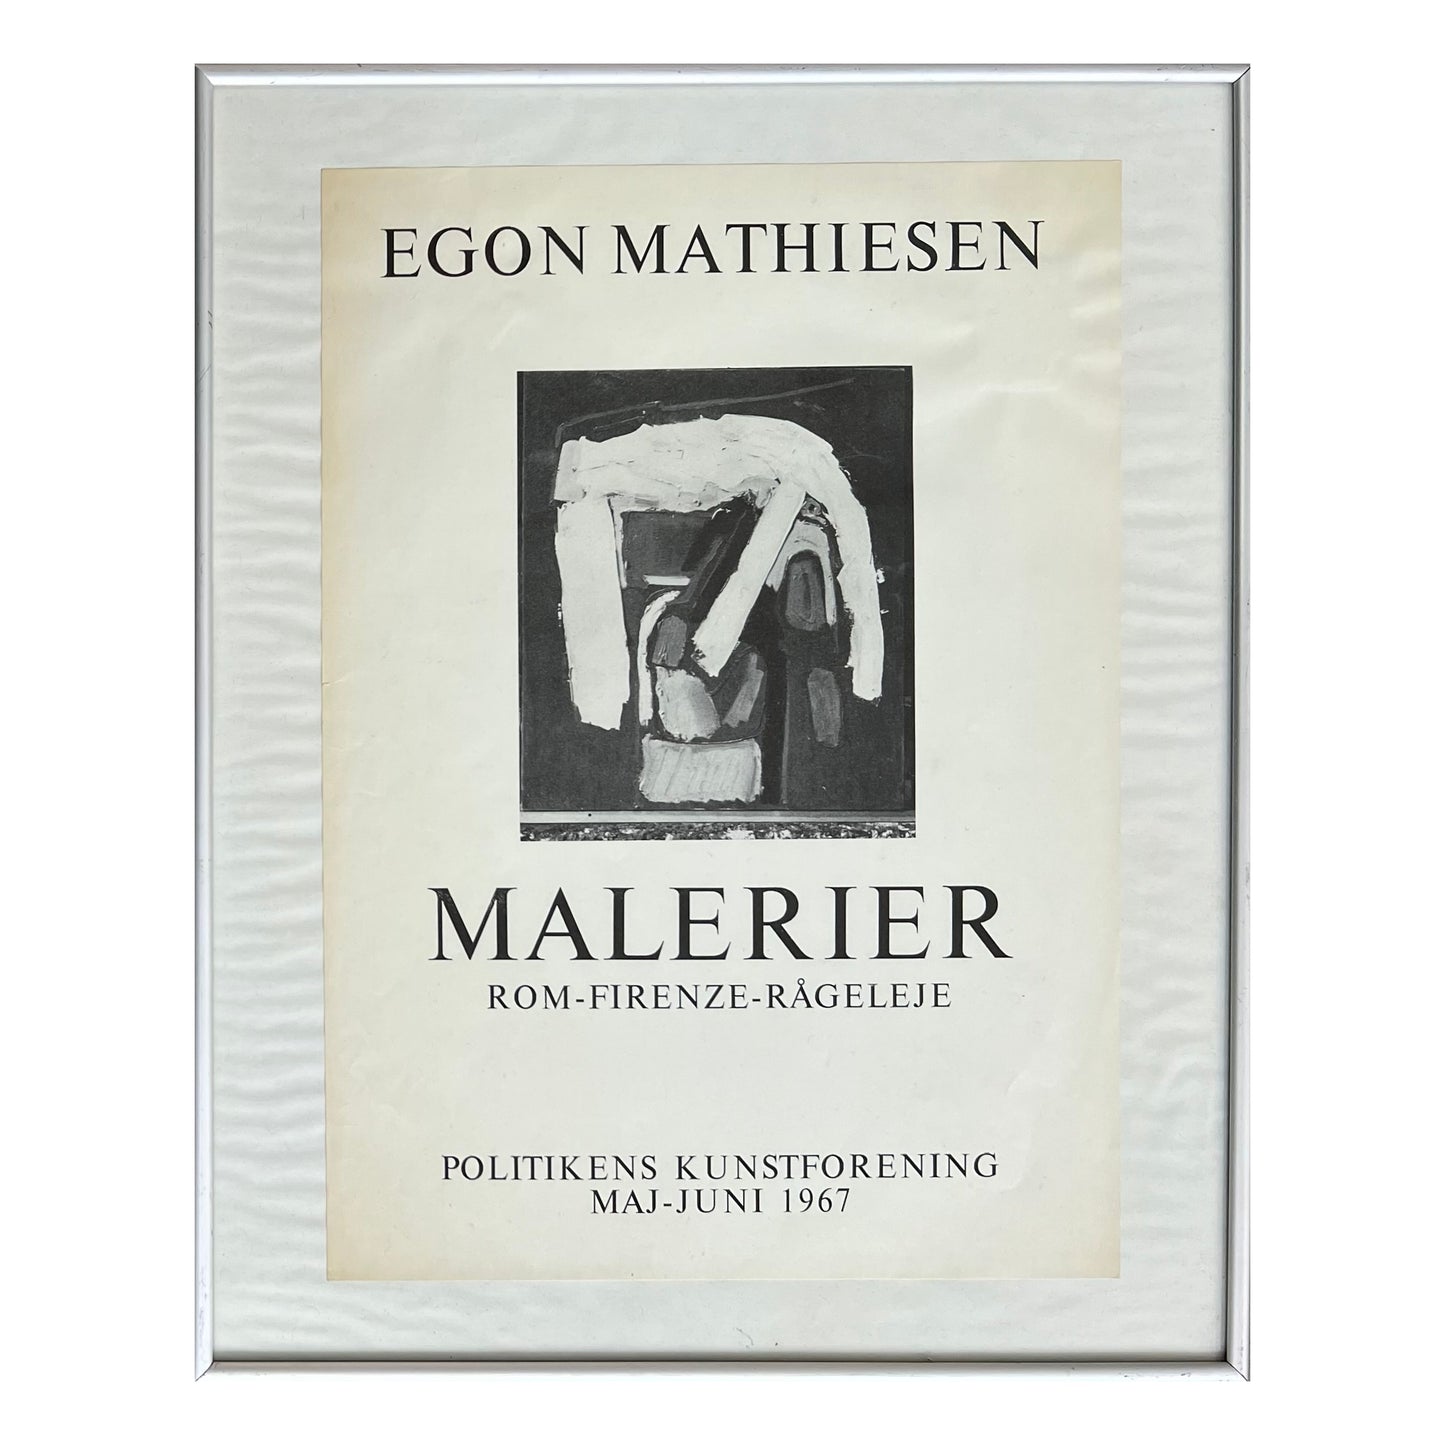 Egon Mathiesen. “Malerier, Rom, Firenze, Rågeleje”, 1967